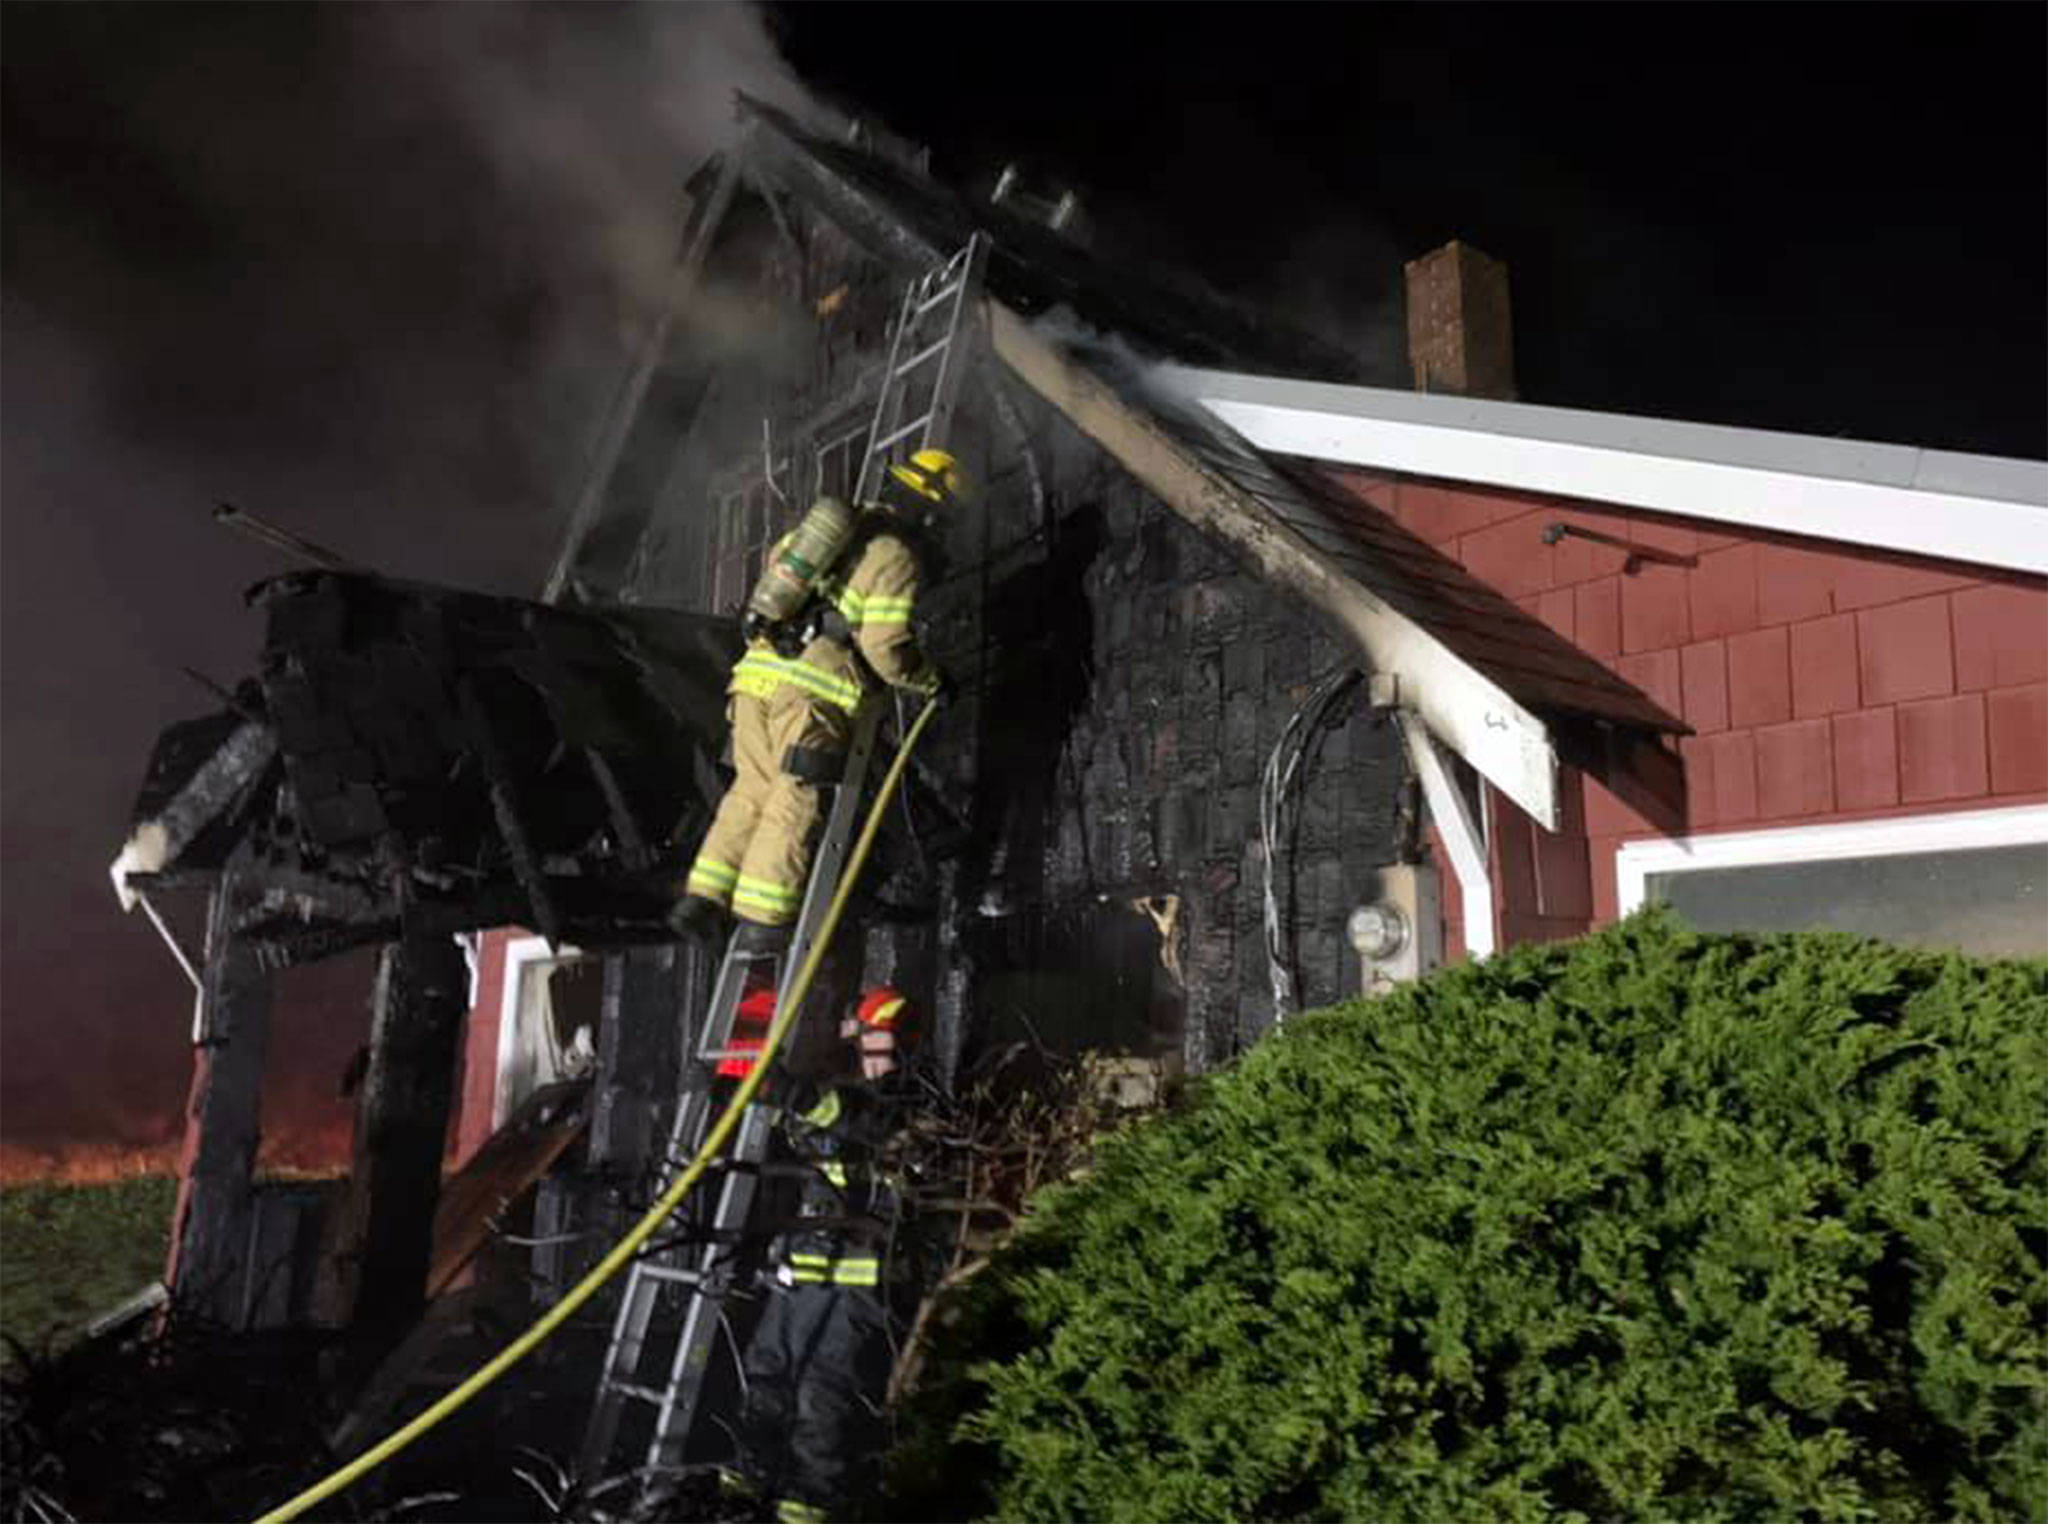 Blaze damages exterior of Freeland home